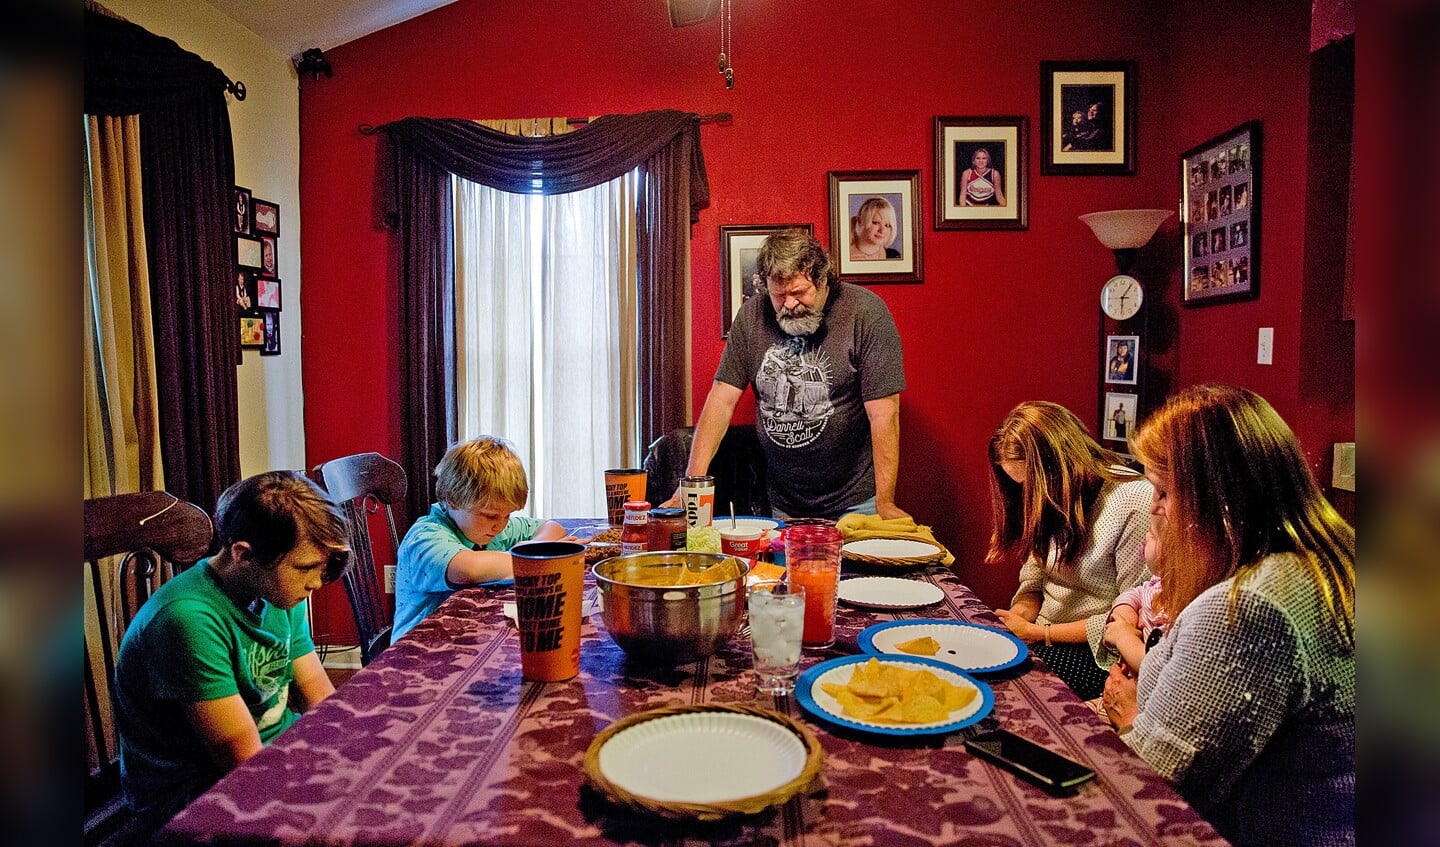 Eddy Sweat bidt thuis voor de maaltijd; aan tafel zitten zijn kleinzoon Robbie (helemaal links) en zijn vrouw Cathy (helemaal rechts), evenals zijn dochter Tabitha en haar kinderen Landon en Lyla. Eddy en Cathy hebben de voogdij gekregen over Robbie.